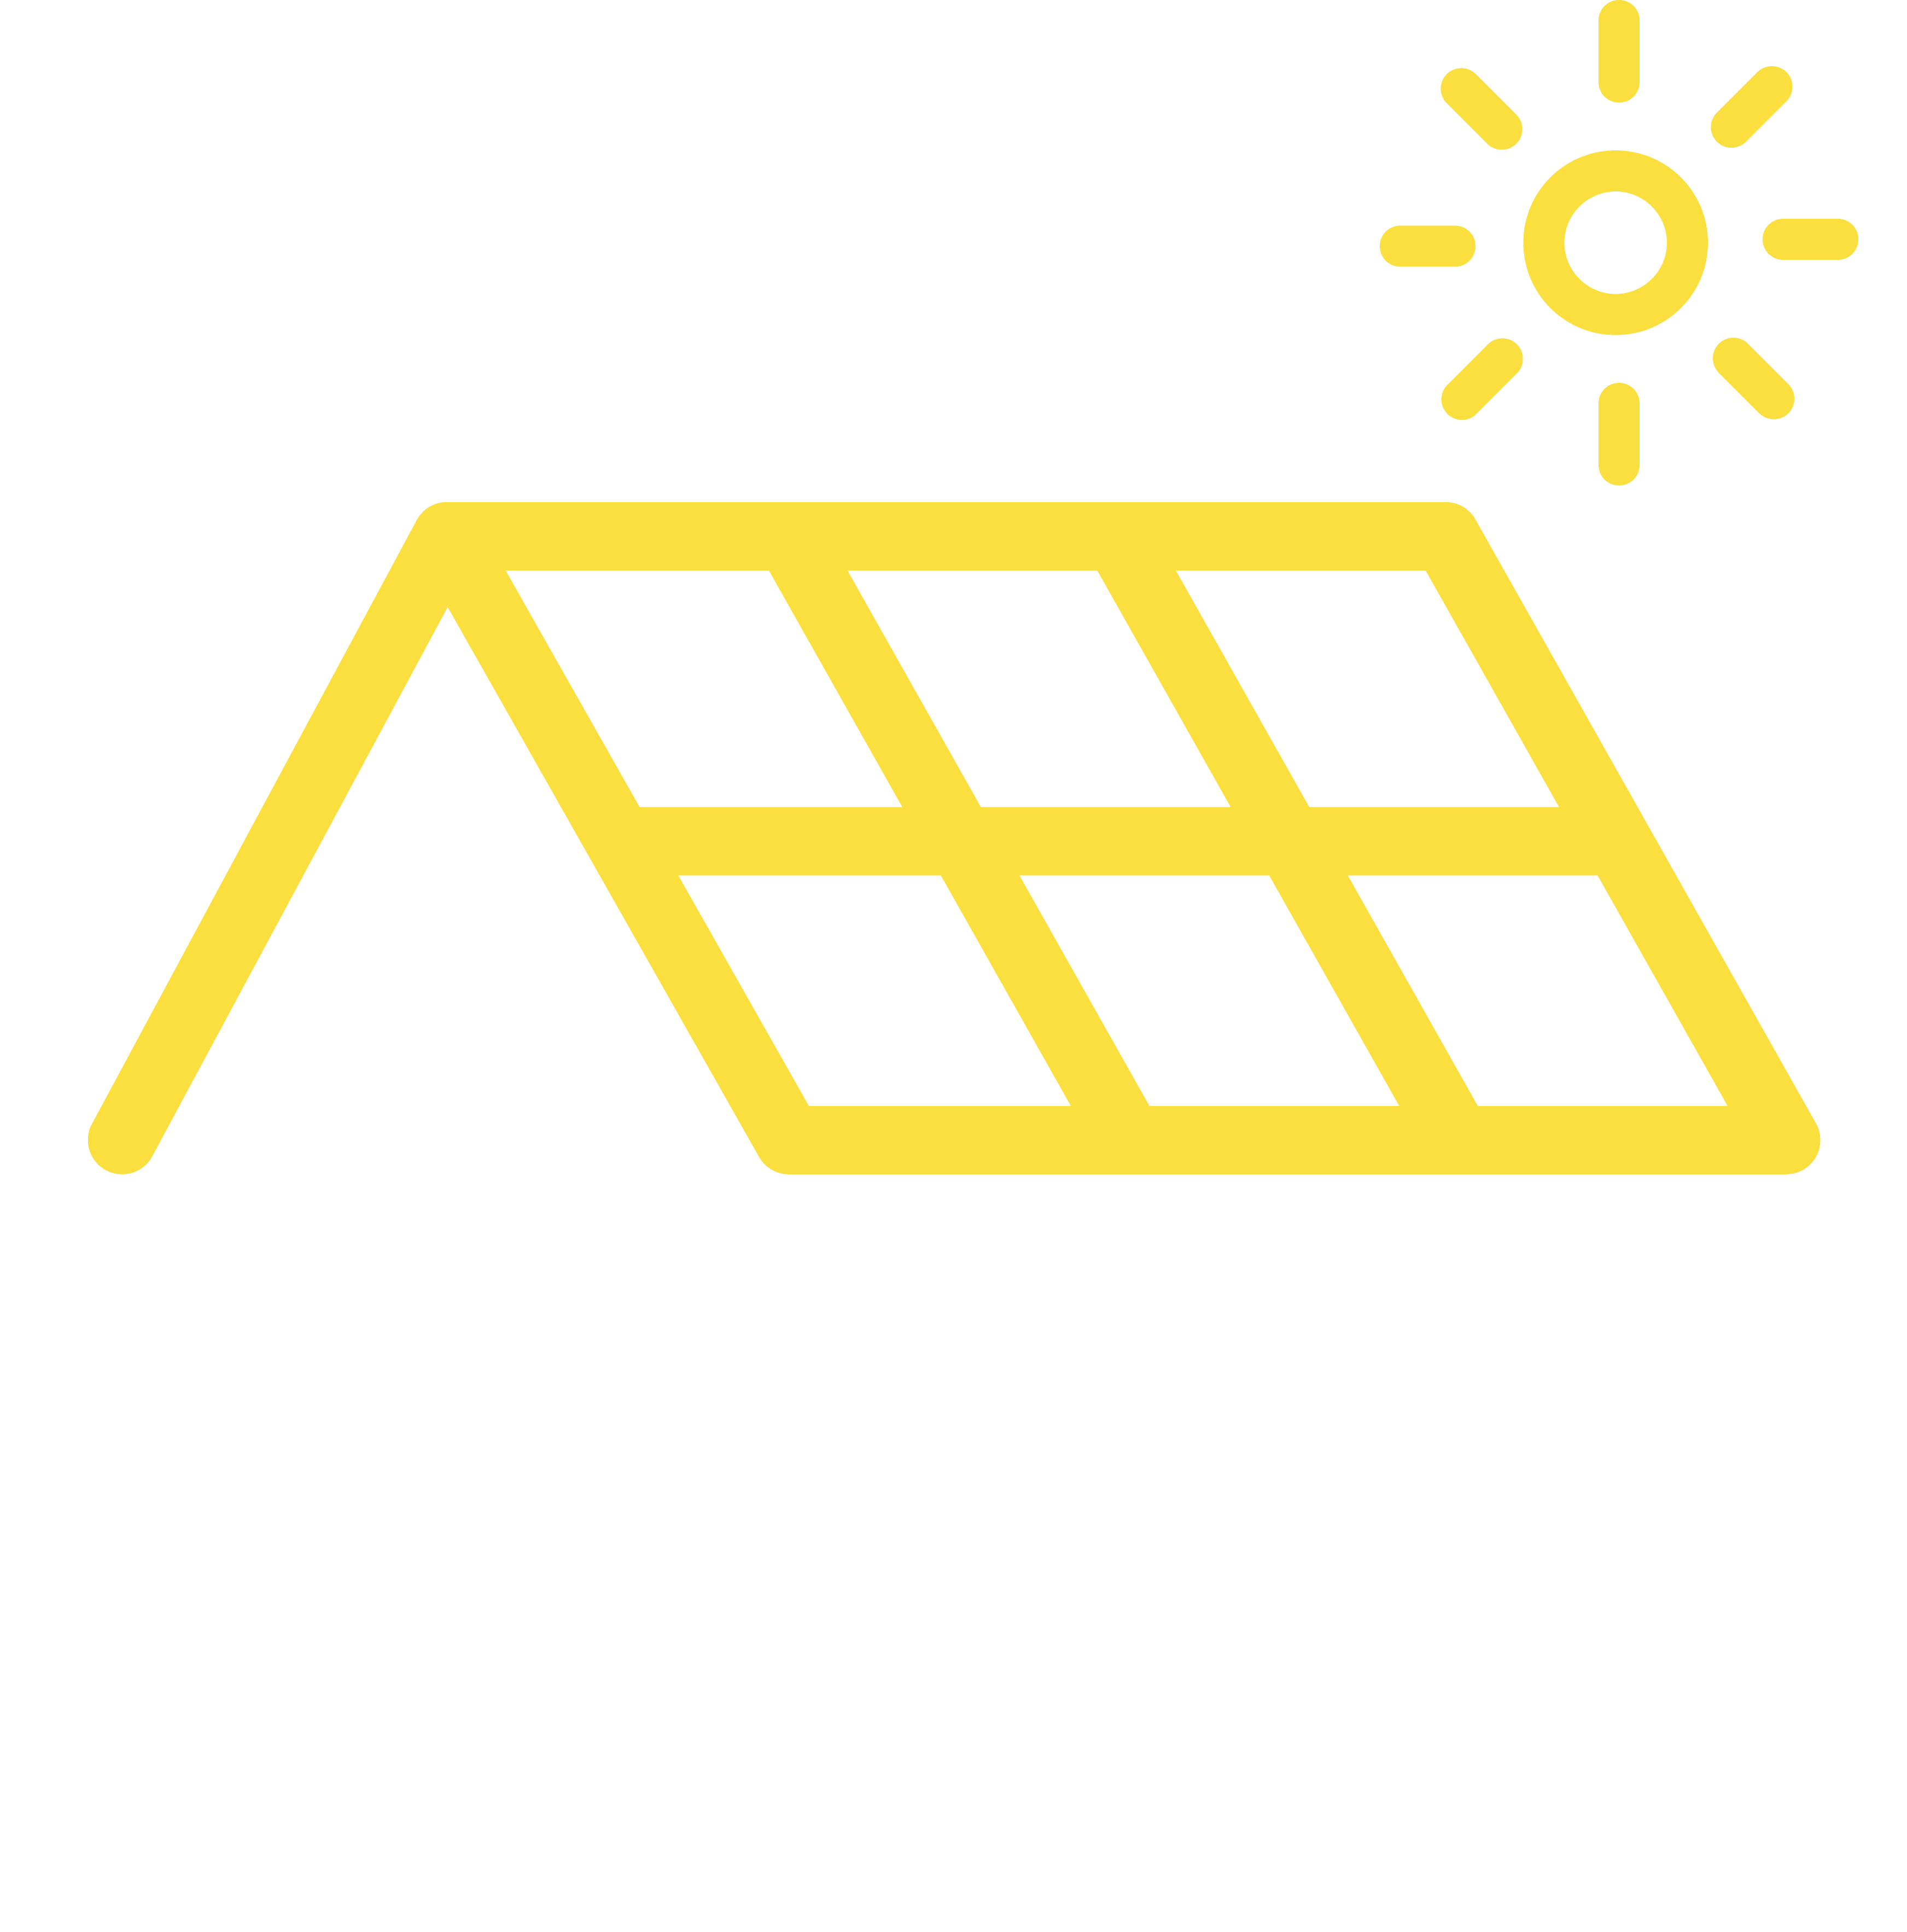 Home - Ziegler Elektrotechnik